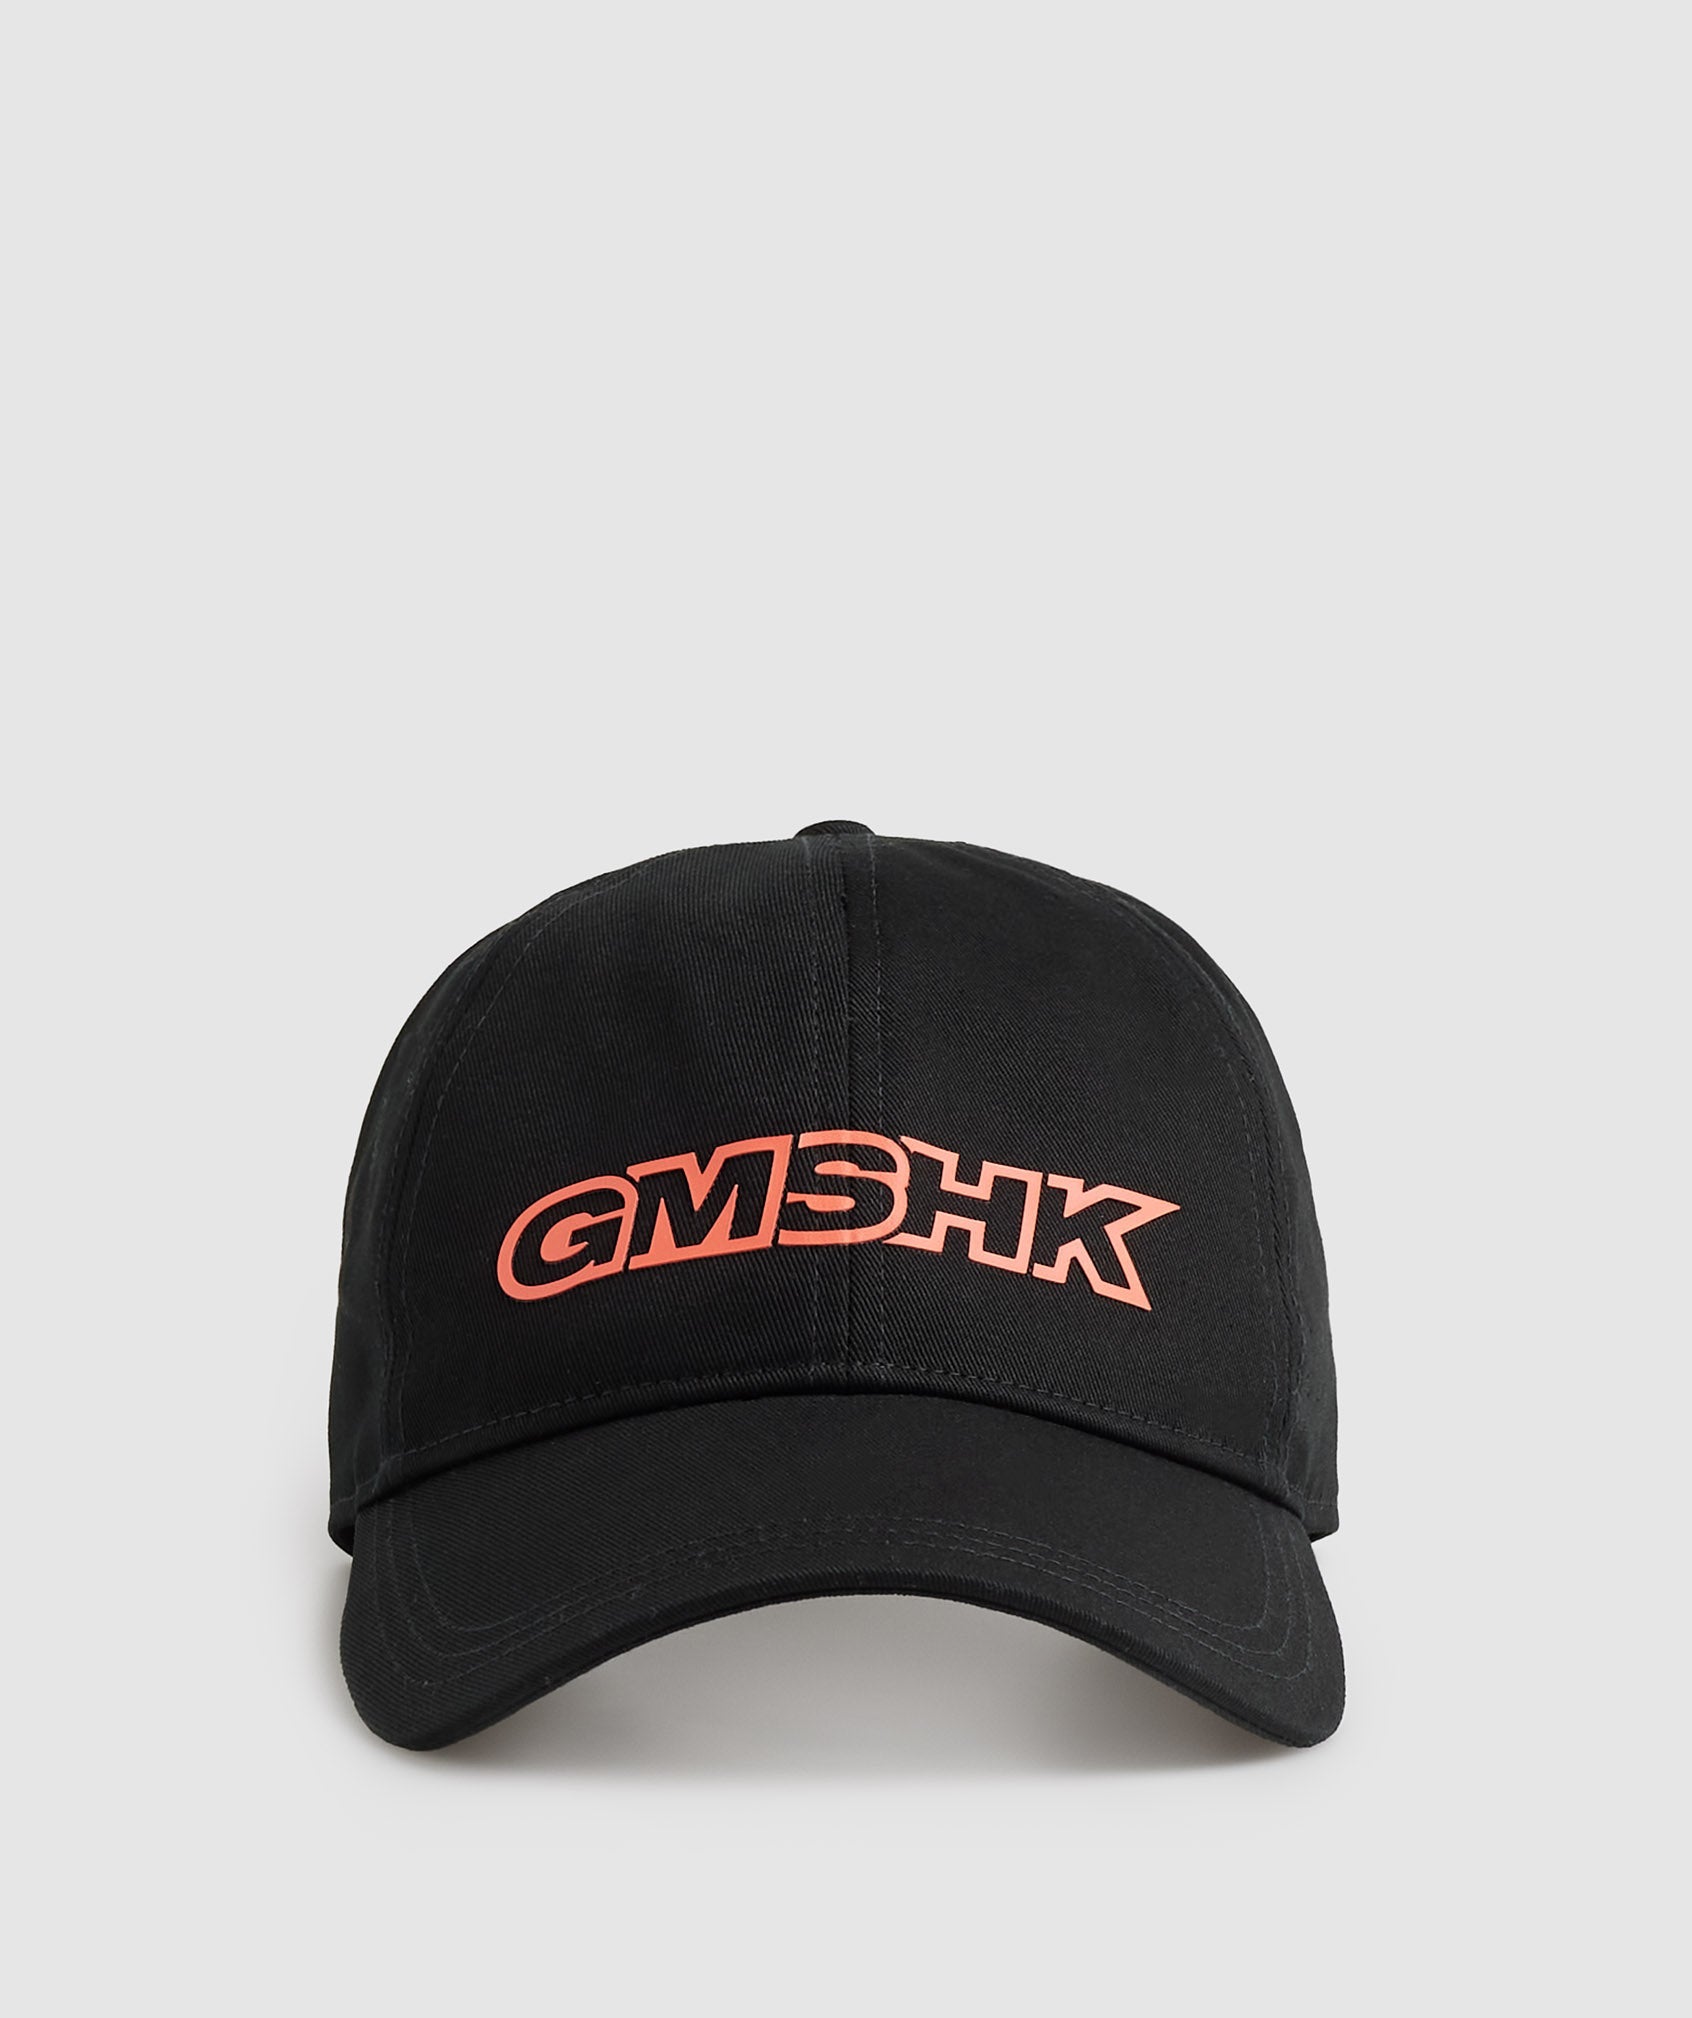 GMSHK Baseball Cap in Black/Solstice Orange - view 3